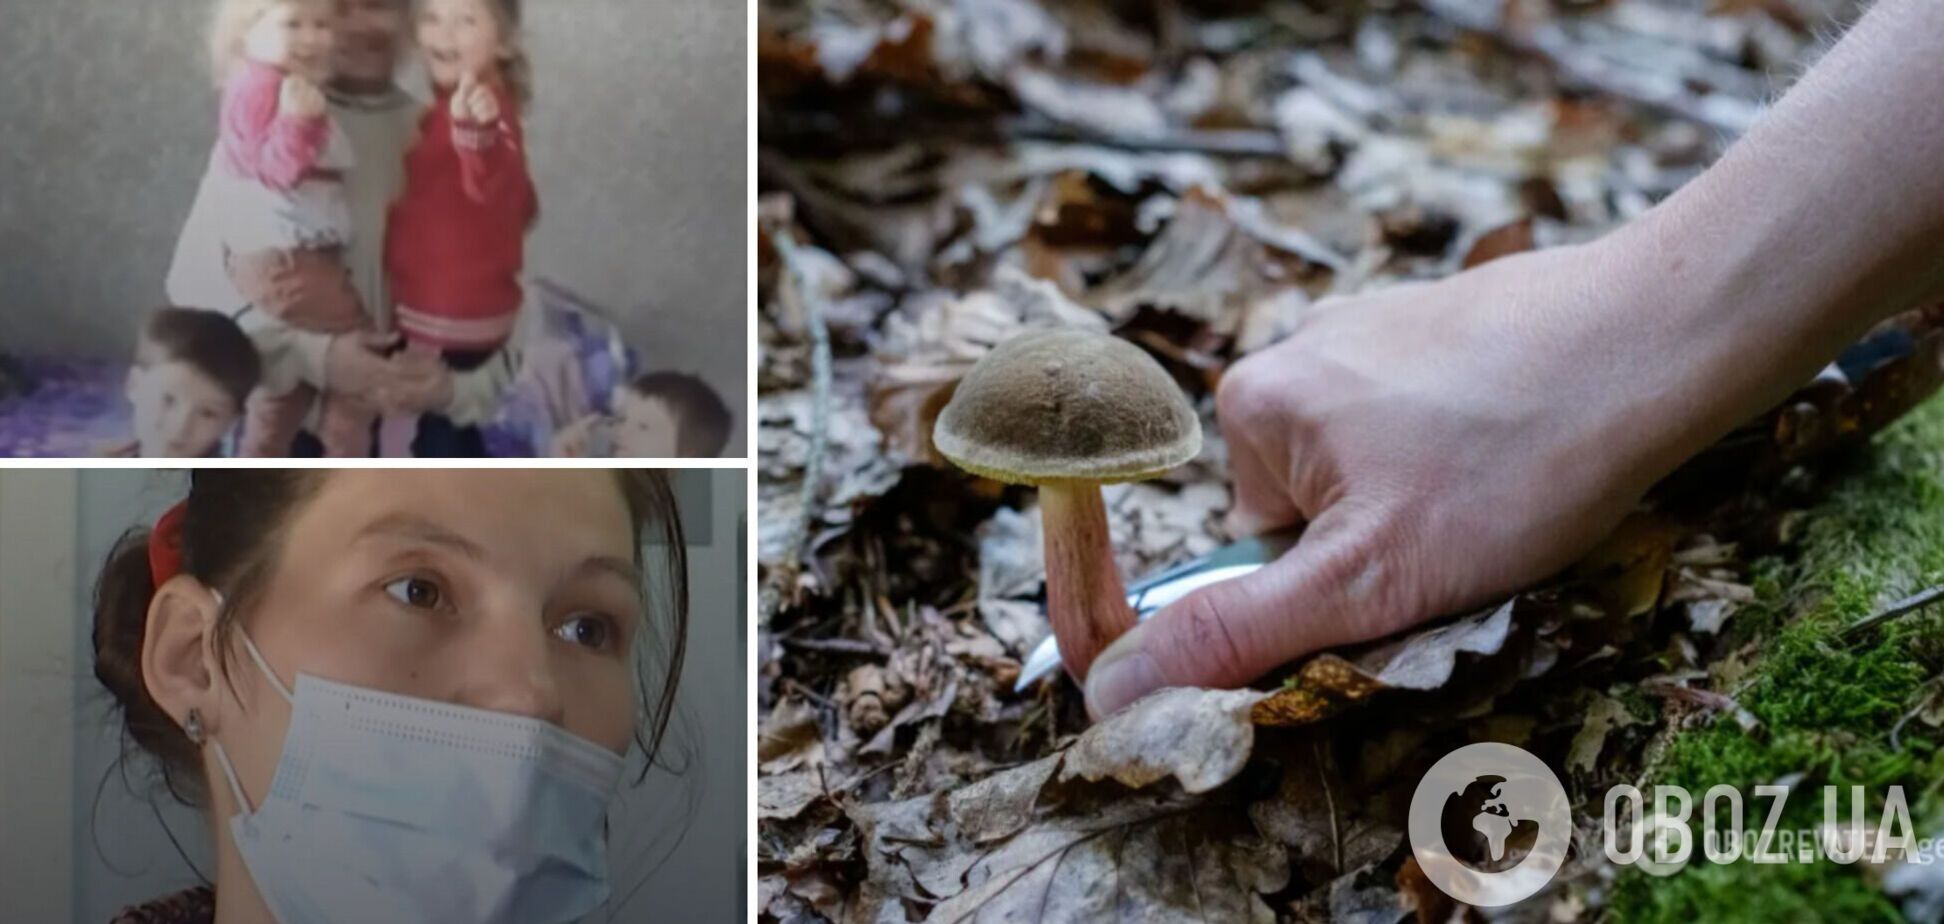 На Черниговщине семья наелась отравленных грибов, двое детей умерли: подробности трагедии